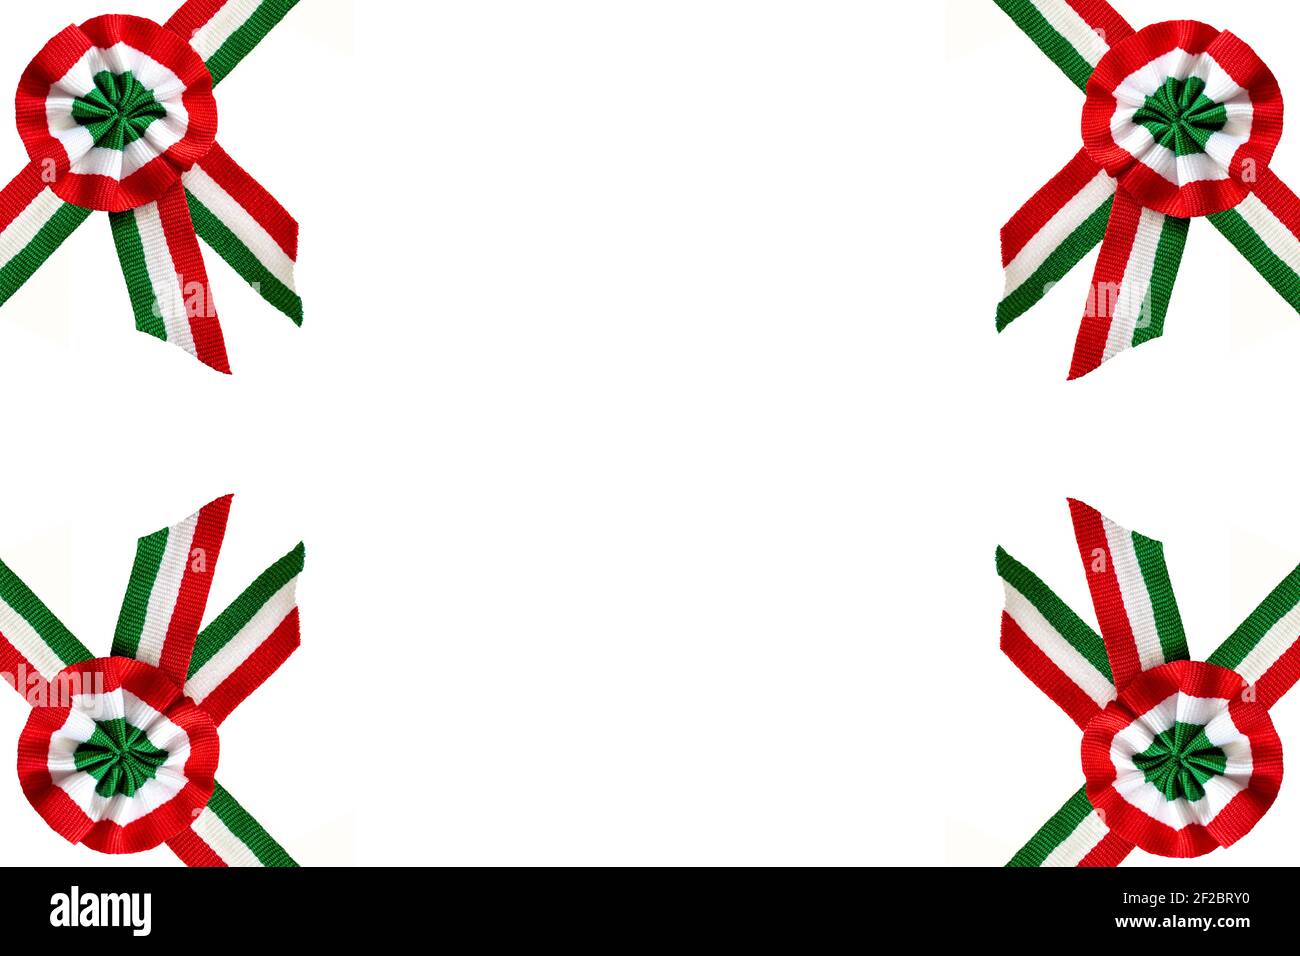 isolé sur rosette tricolore blanche et symbole de recouvrement de ruban de journée nationale hongroise le 15 mars Banque D'Images